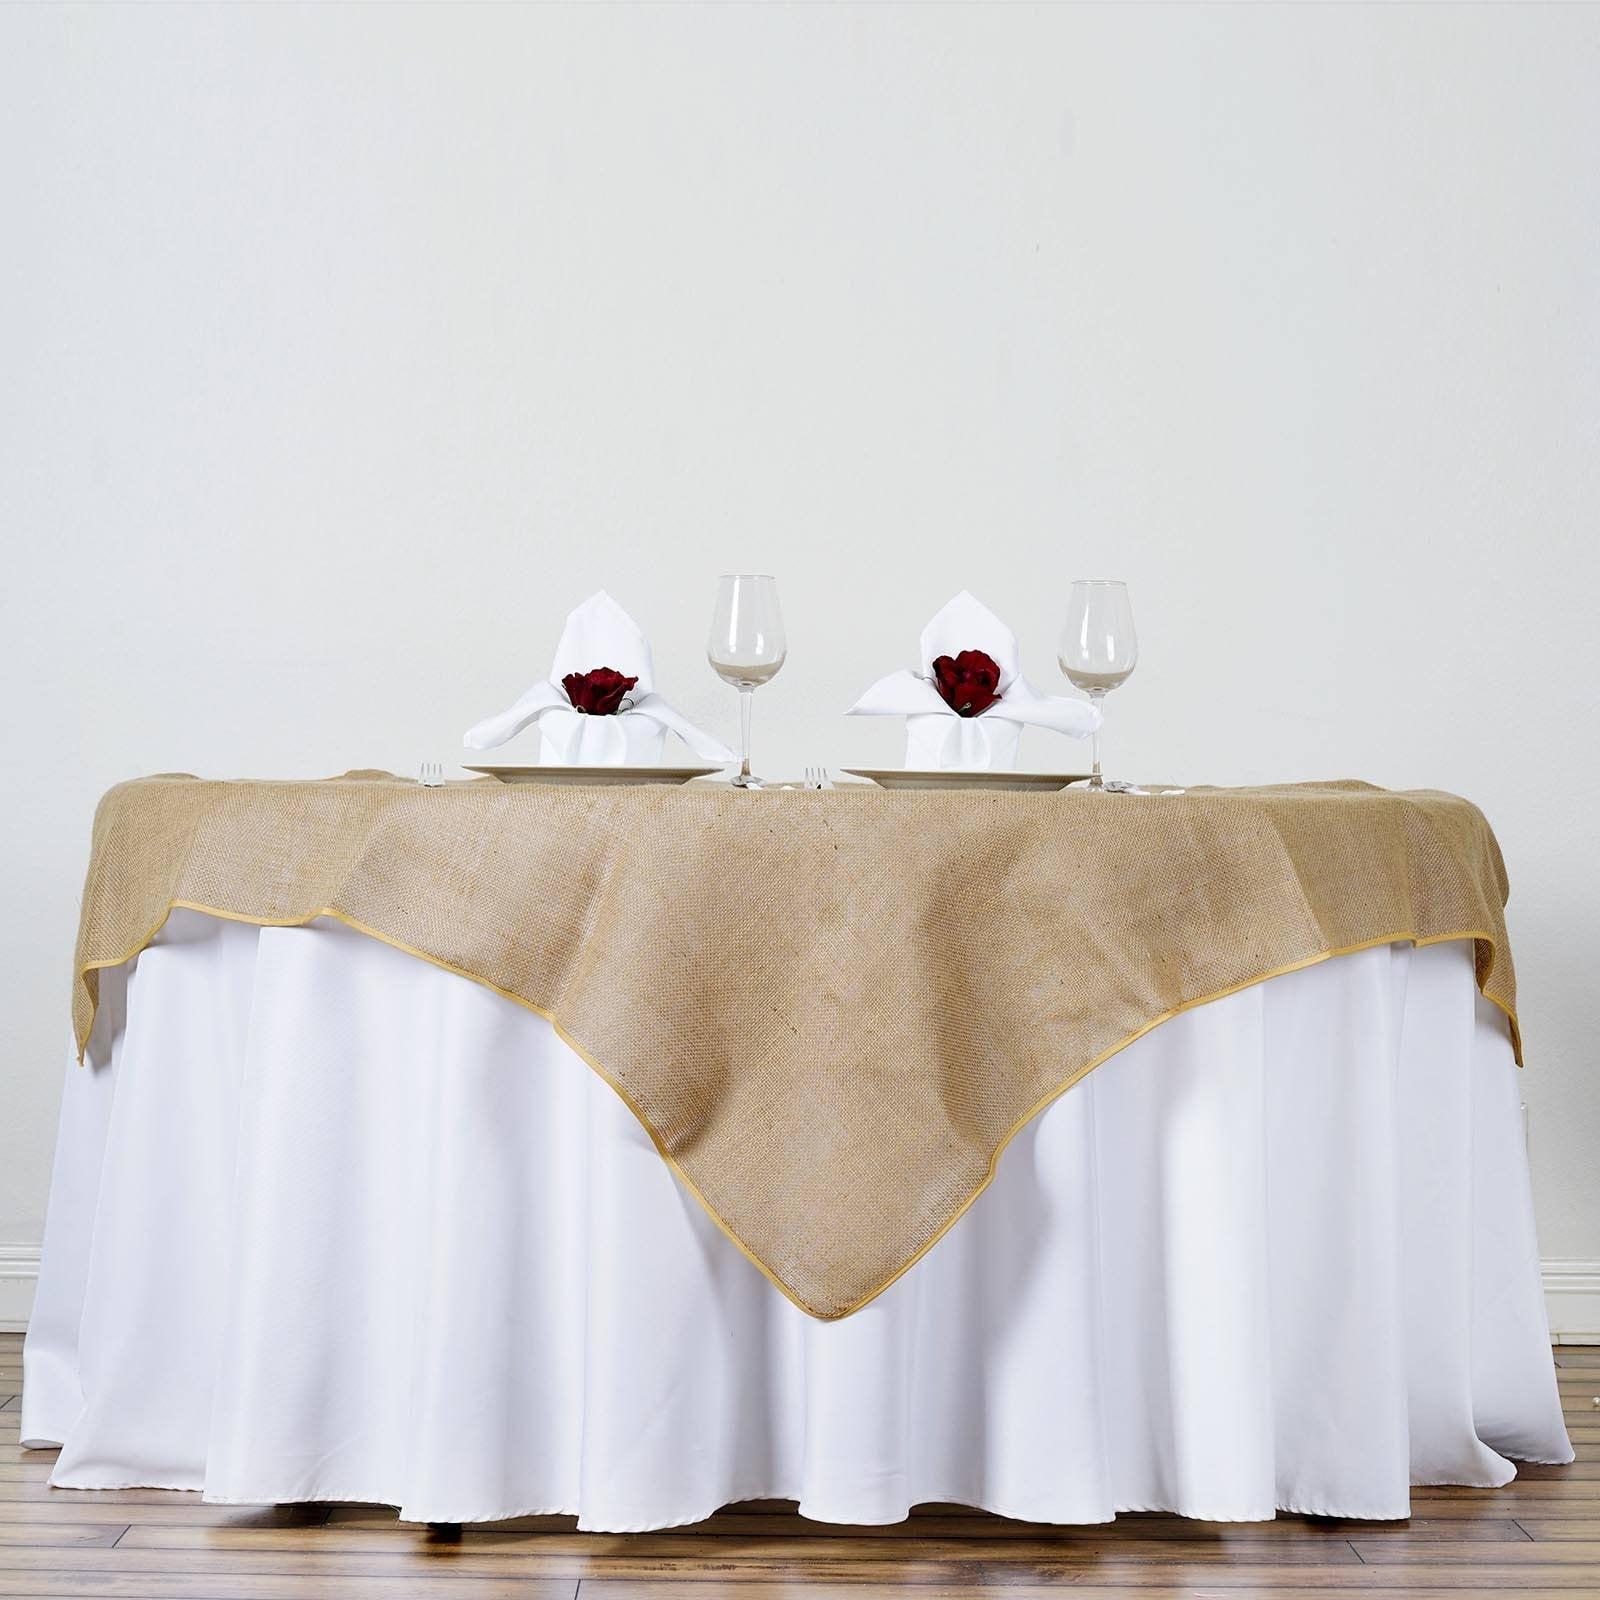 30 Lot 54"×54" Burlap Tablecloths Overlays Seamless Wedding 100% Natural Jute 